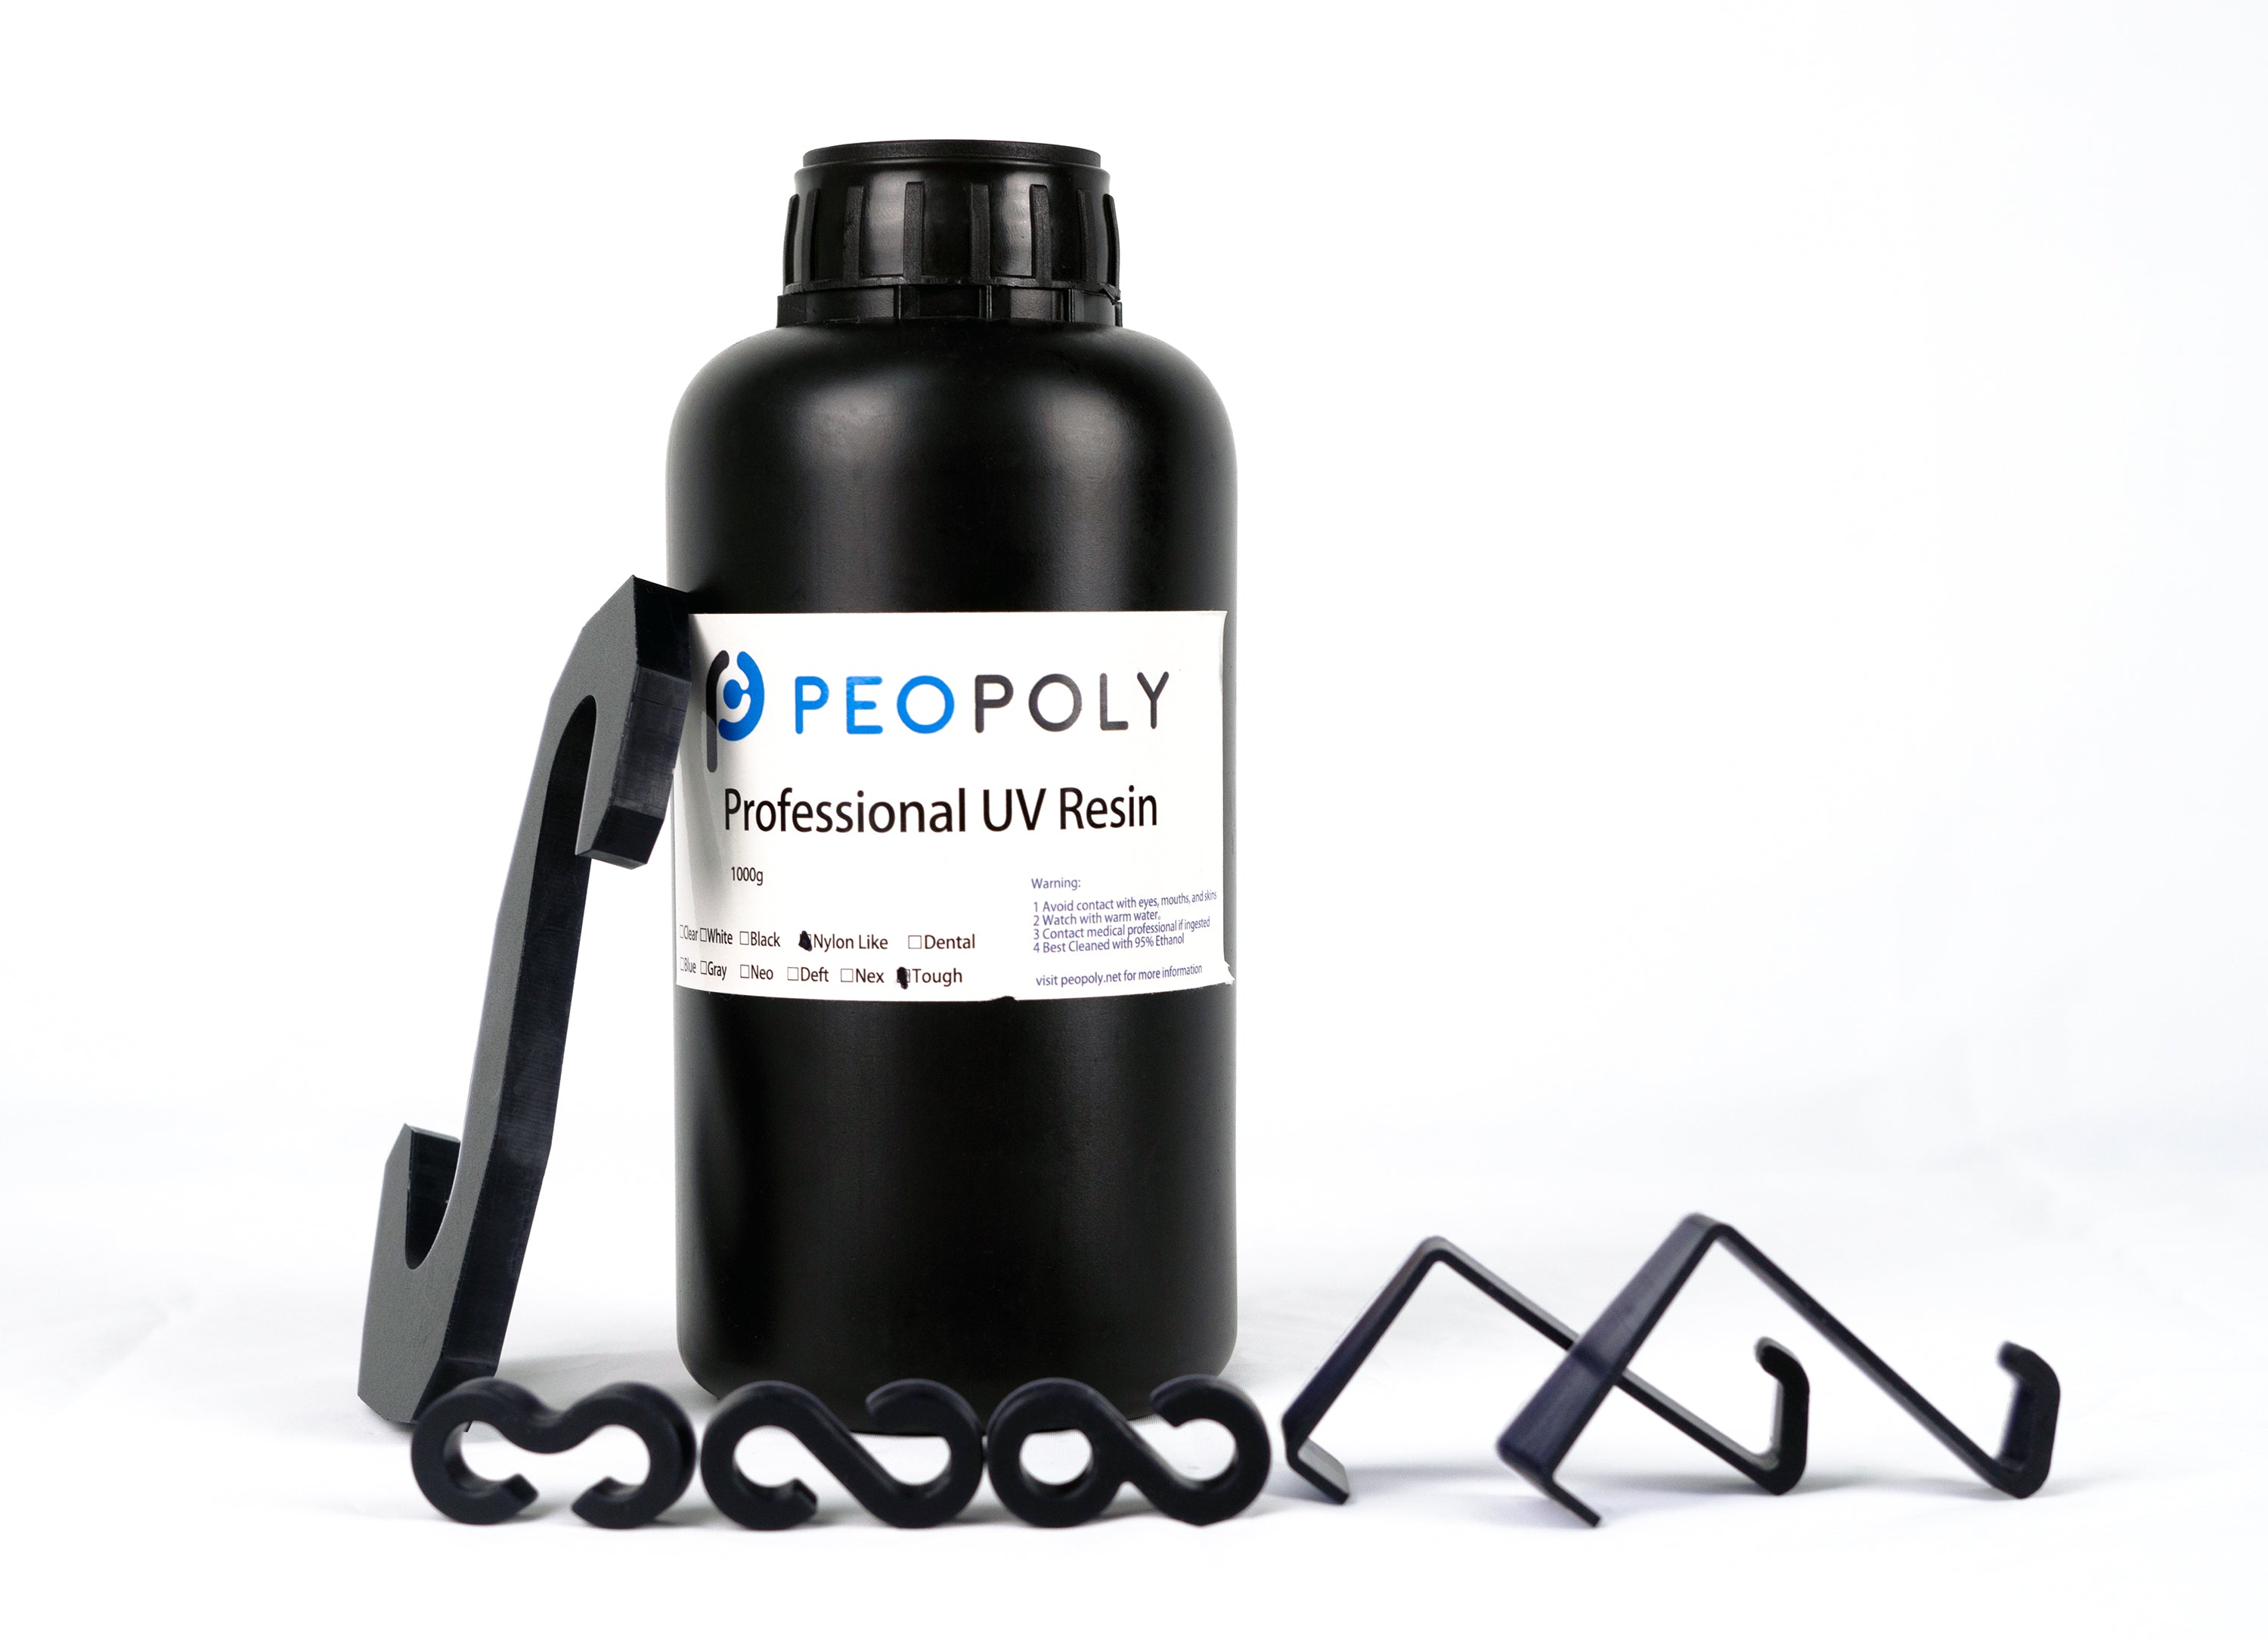 Nylon-Like Tough Resin by Peopoly (1kg)